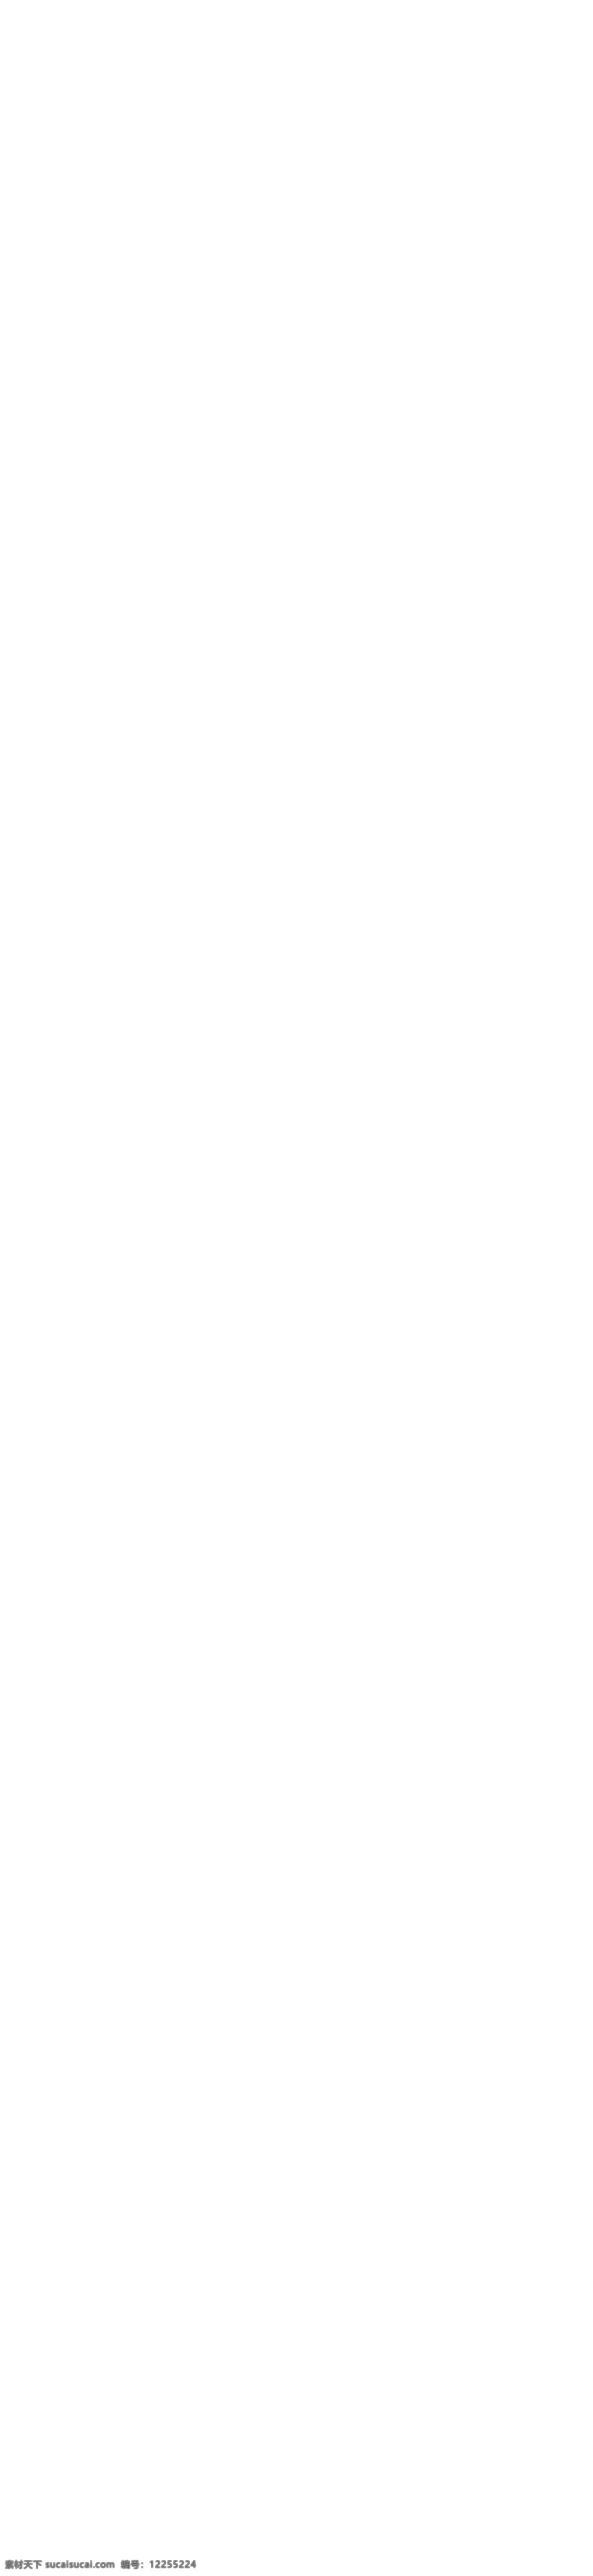 淘宝 v 姿 化妆品 旗舰店 模板 首页有惊喜 买送活动主题 射灯 钻石 全场大放送 尽享八折优惠 科技祛斑 网店模板 天猫模板 淘宝模板 淘宝装修模板 店铺模板 淘宝素材 天猫 psd格式 白色